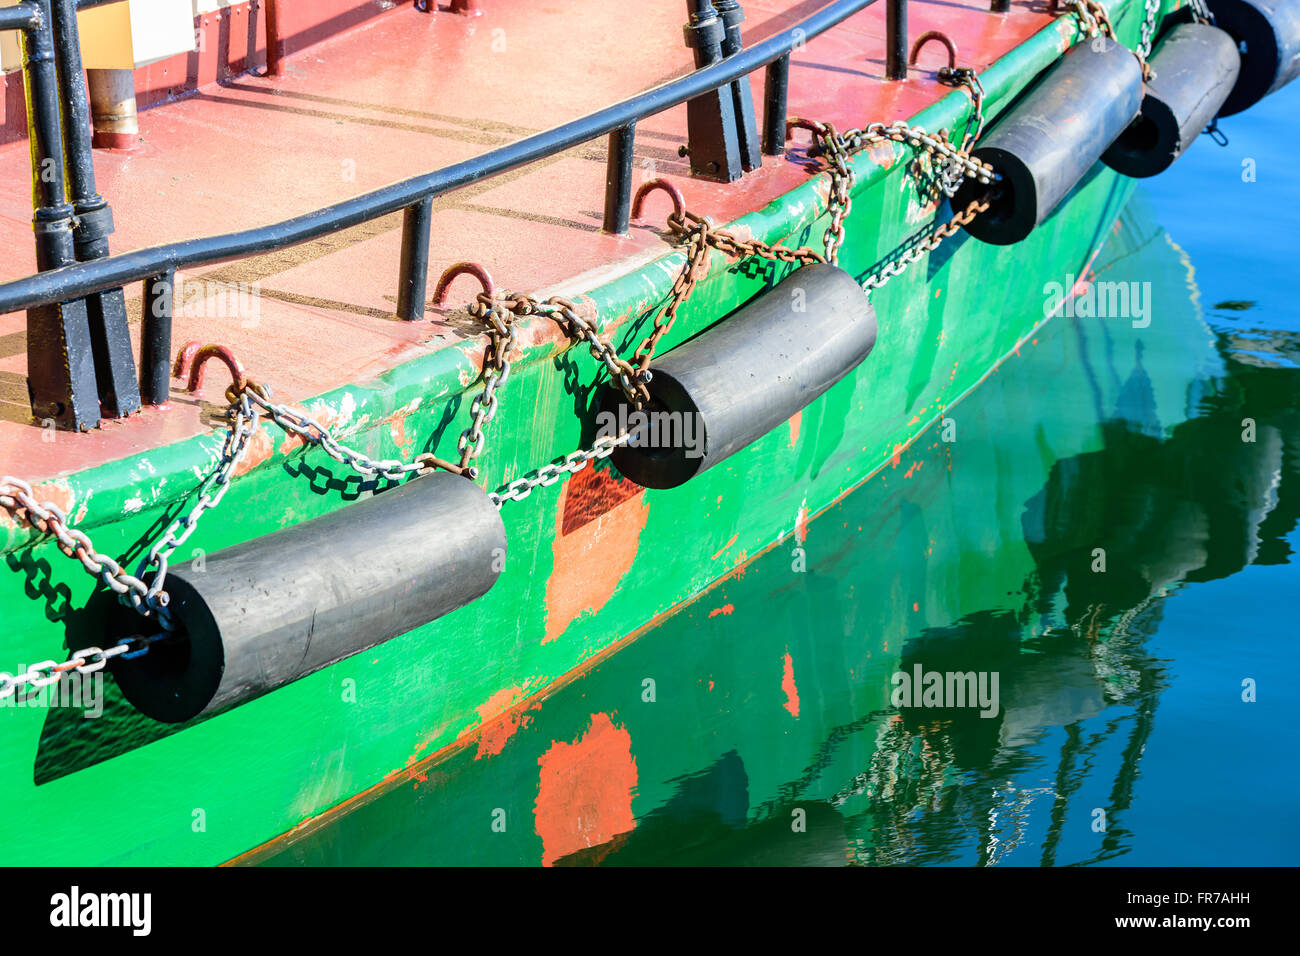 Eine grüne Boot Kiel mit schwarzem Gummipuffer in reflektierenden Wasser. Stockfoto